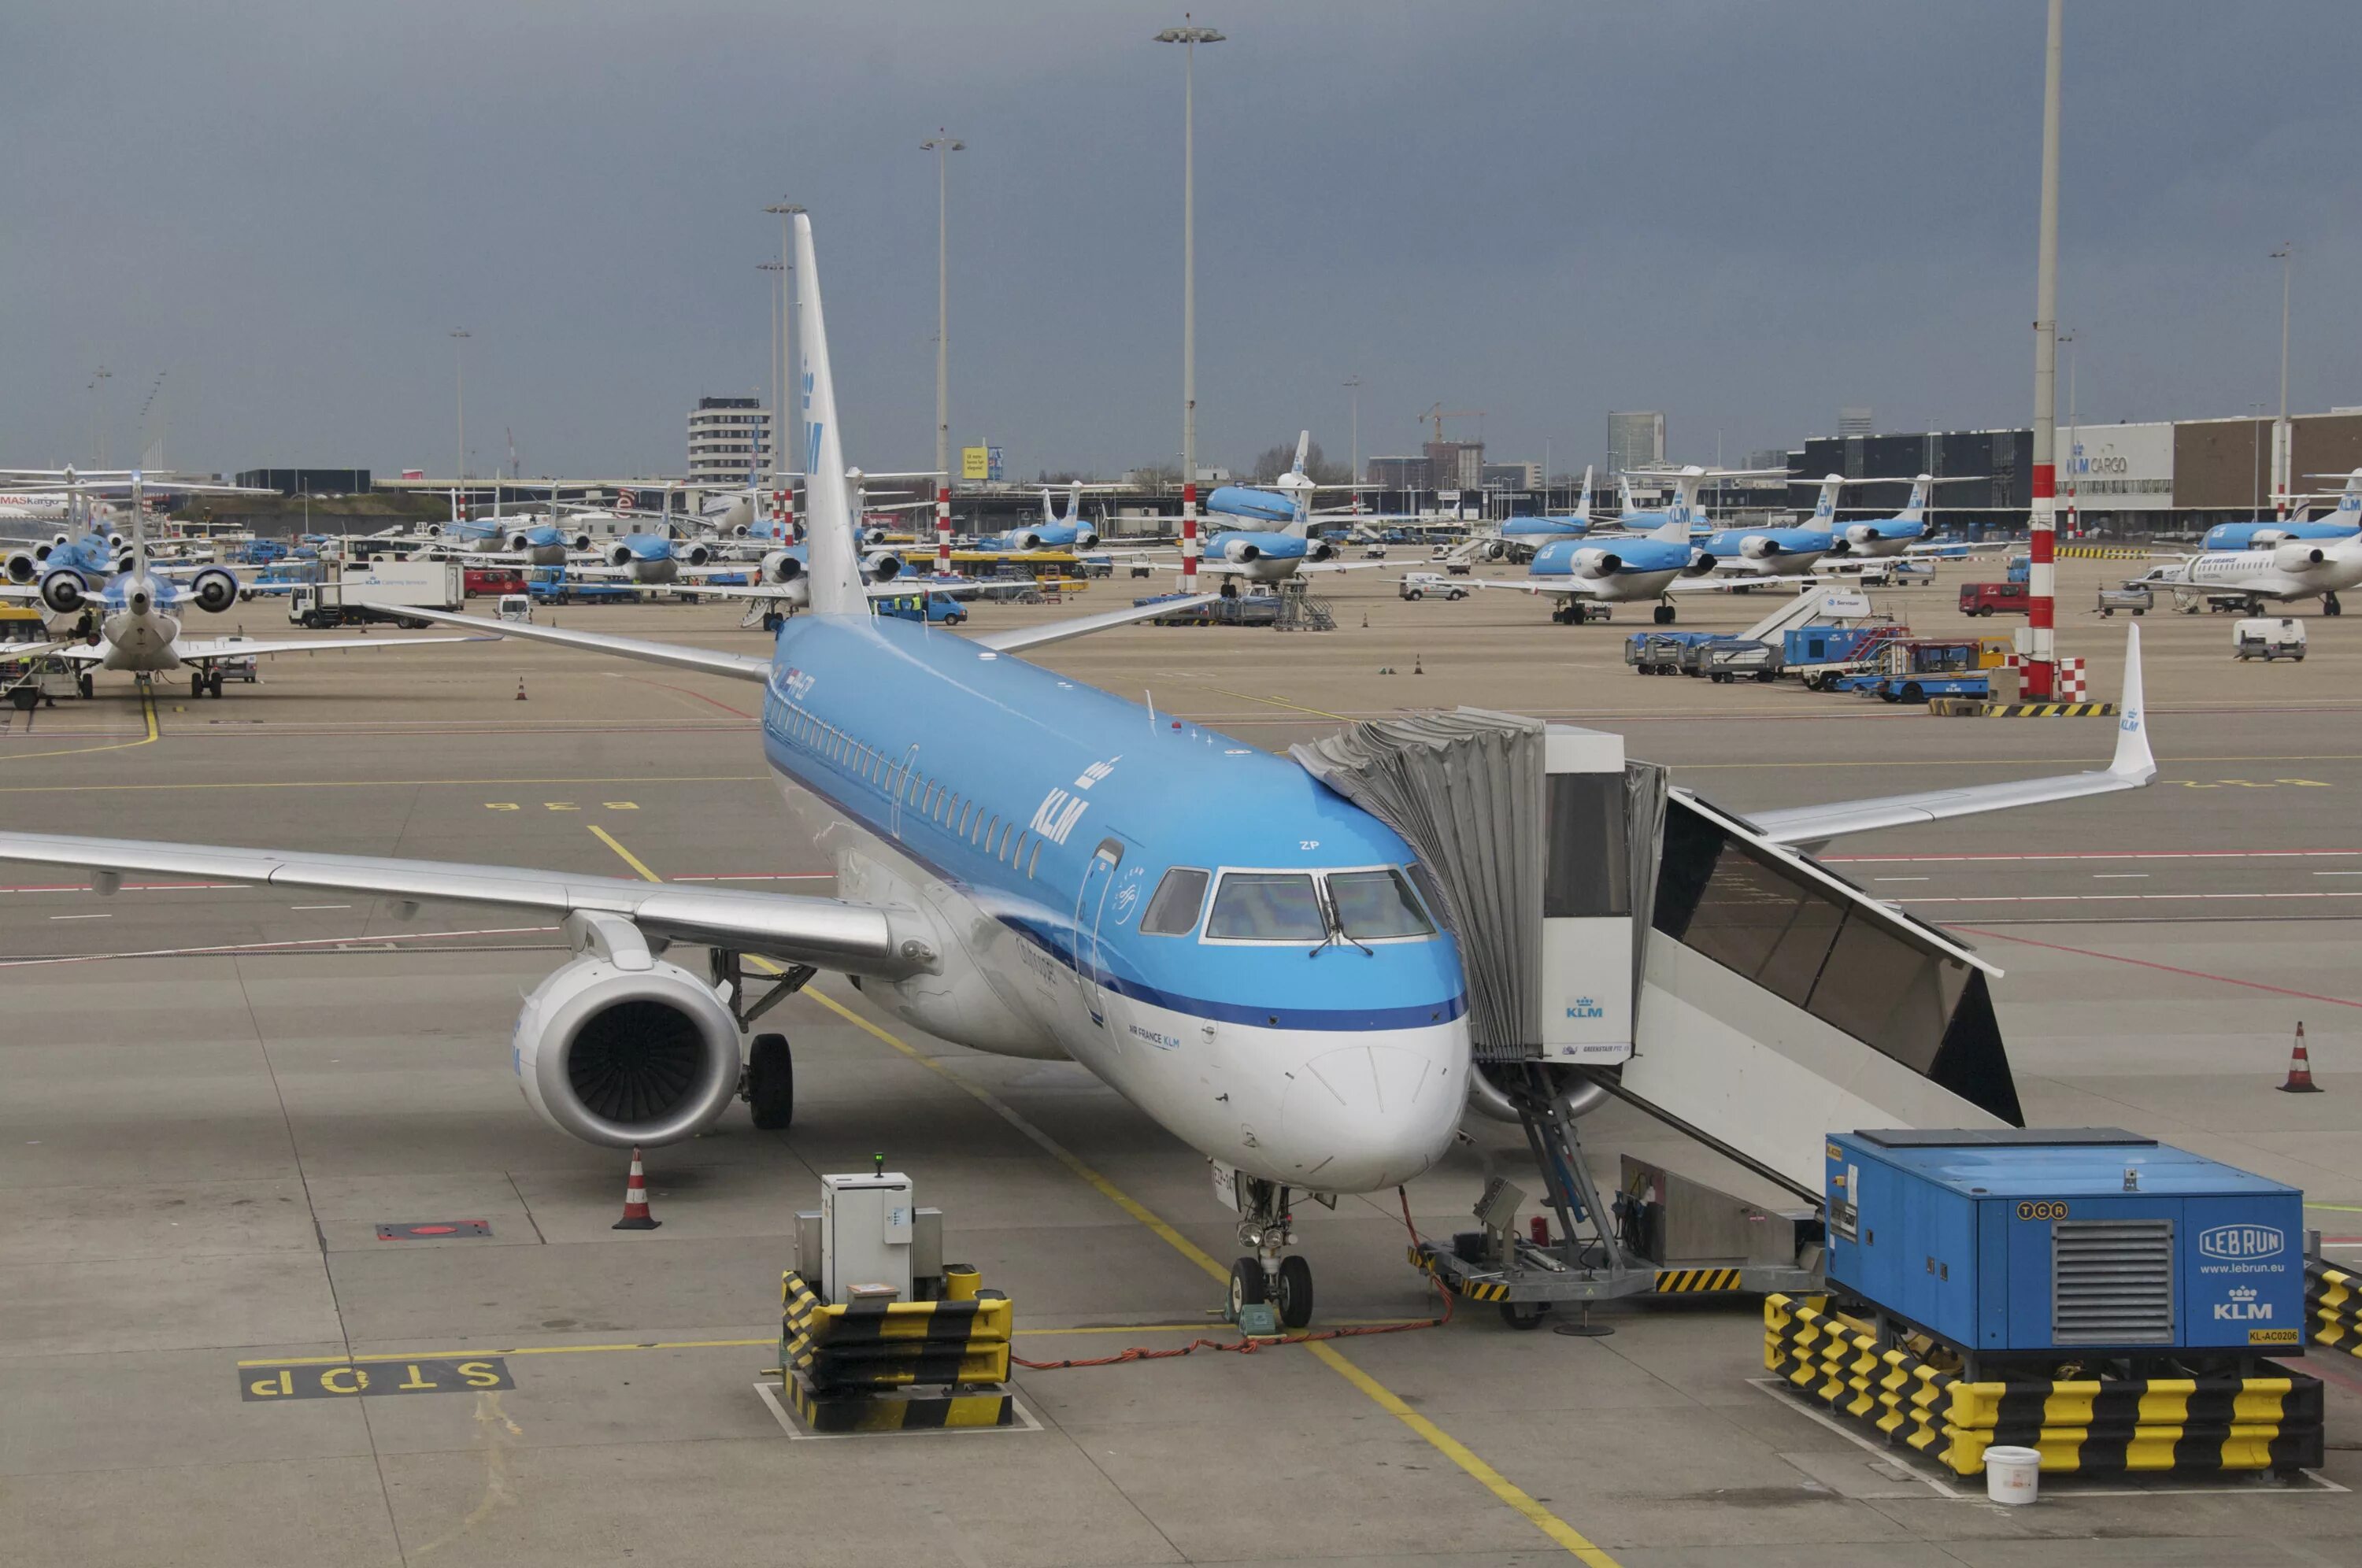 Авиакомпании перевозчики. Embraer 190. Brussels Airport 747. Аэропорт Схипхол для KLM. KLM Cityhopper.